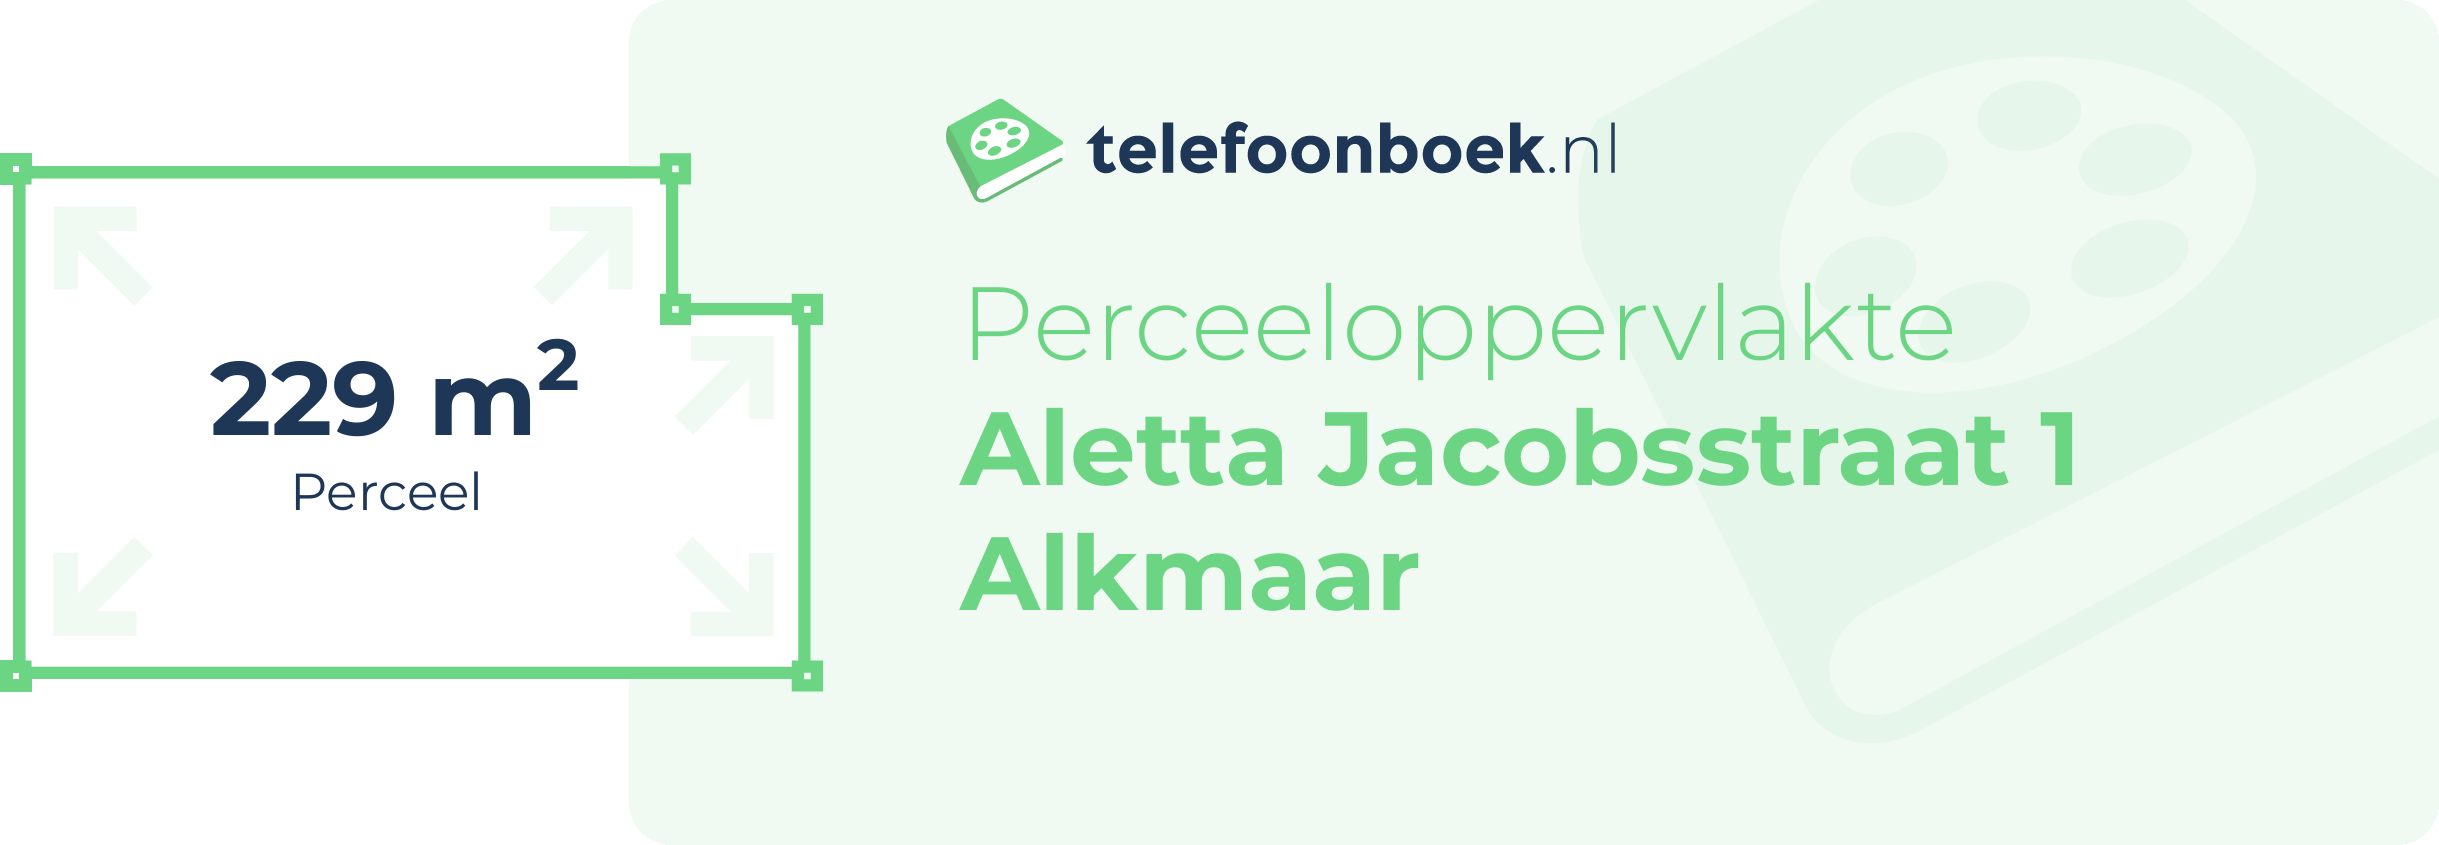 Perceeloppervlakte Aletta Jacobsstraat 1 Alkmaar